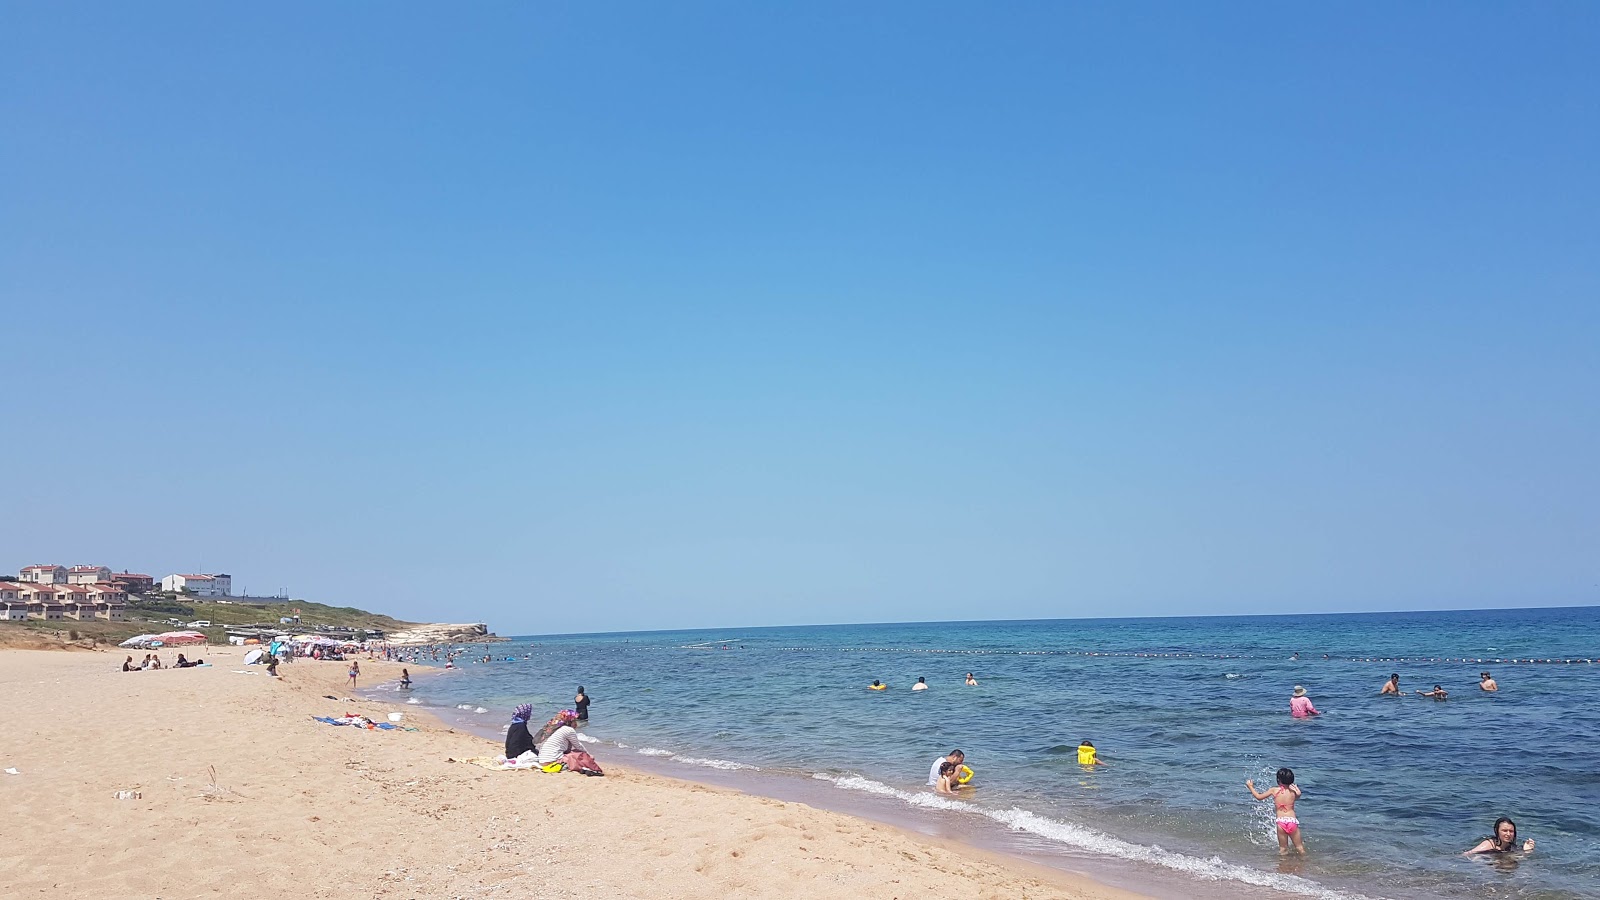 Sahilkoy Halk Plaji的照片 带有宽敞的海岸